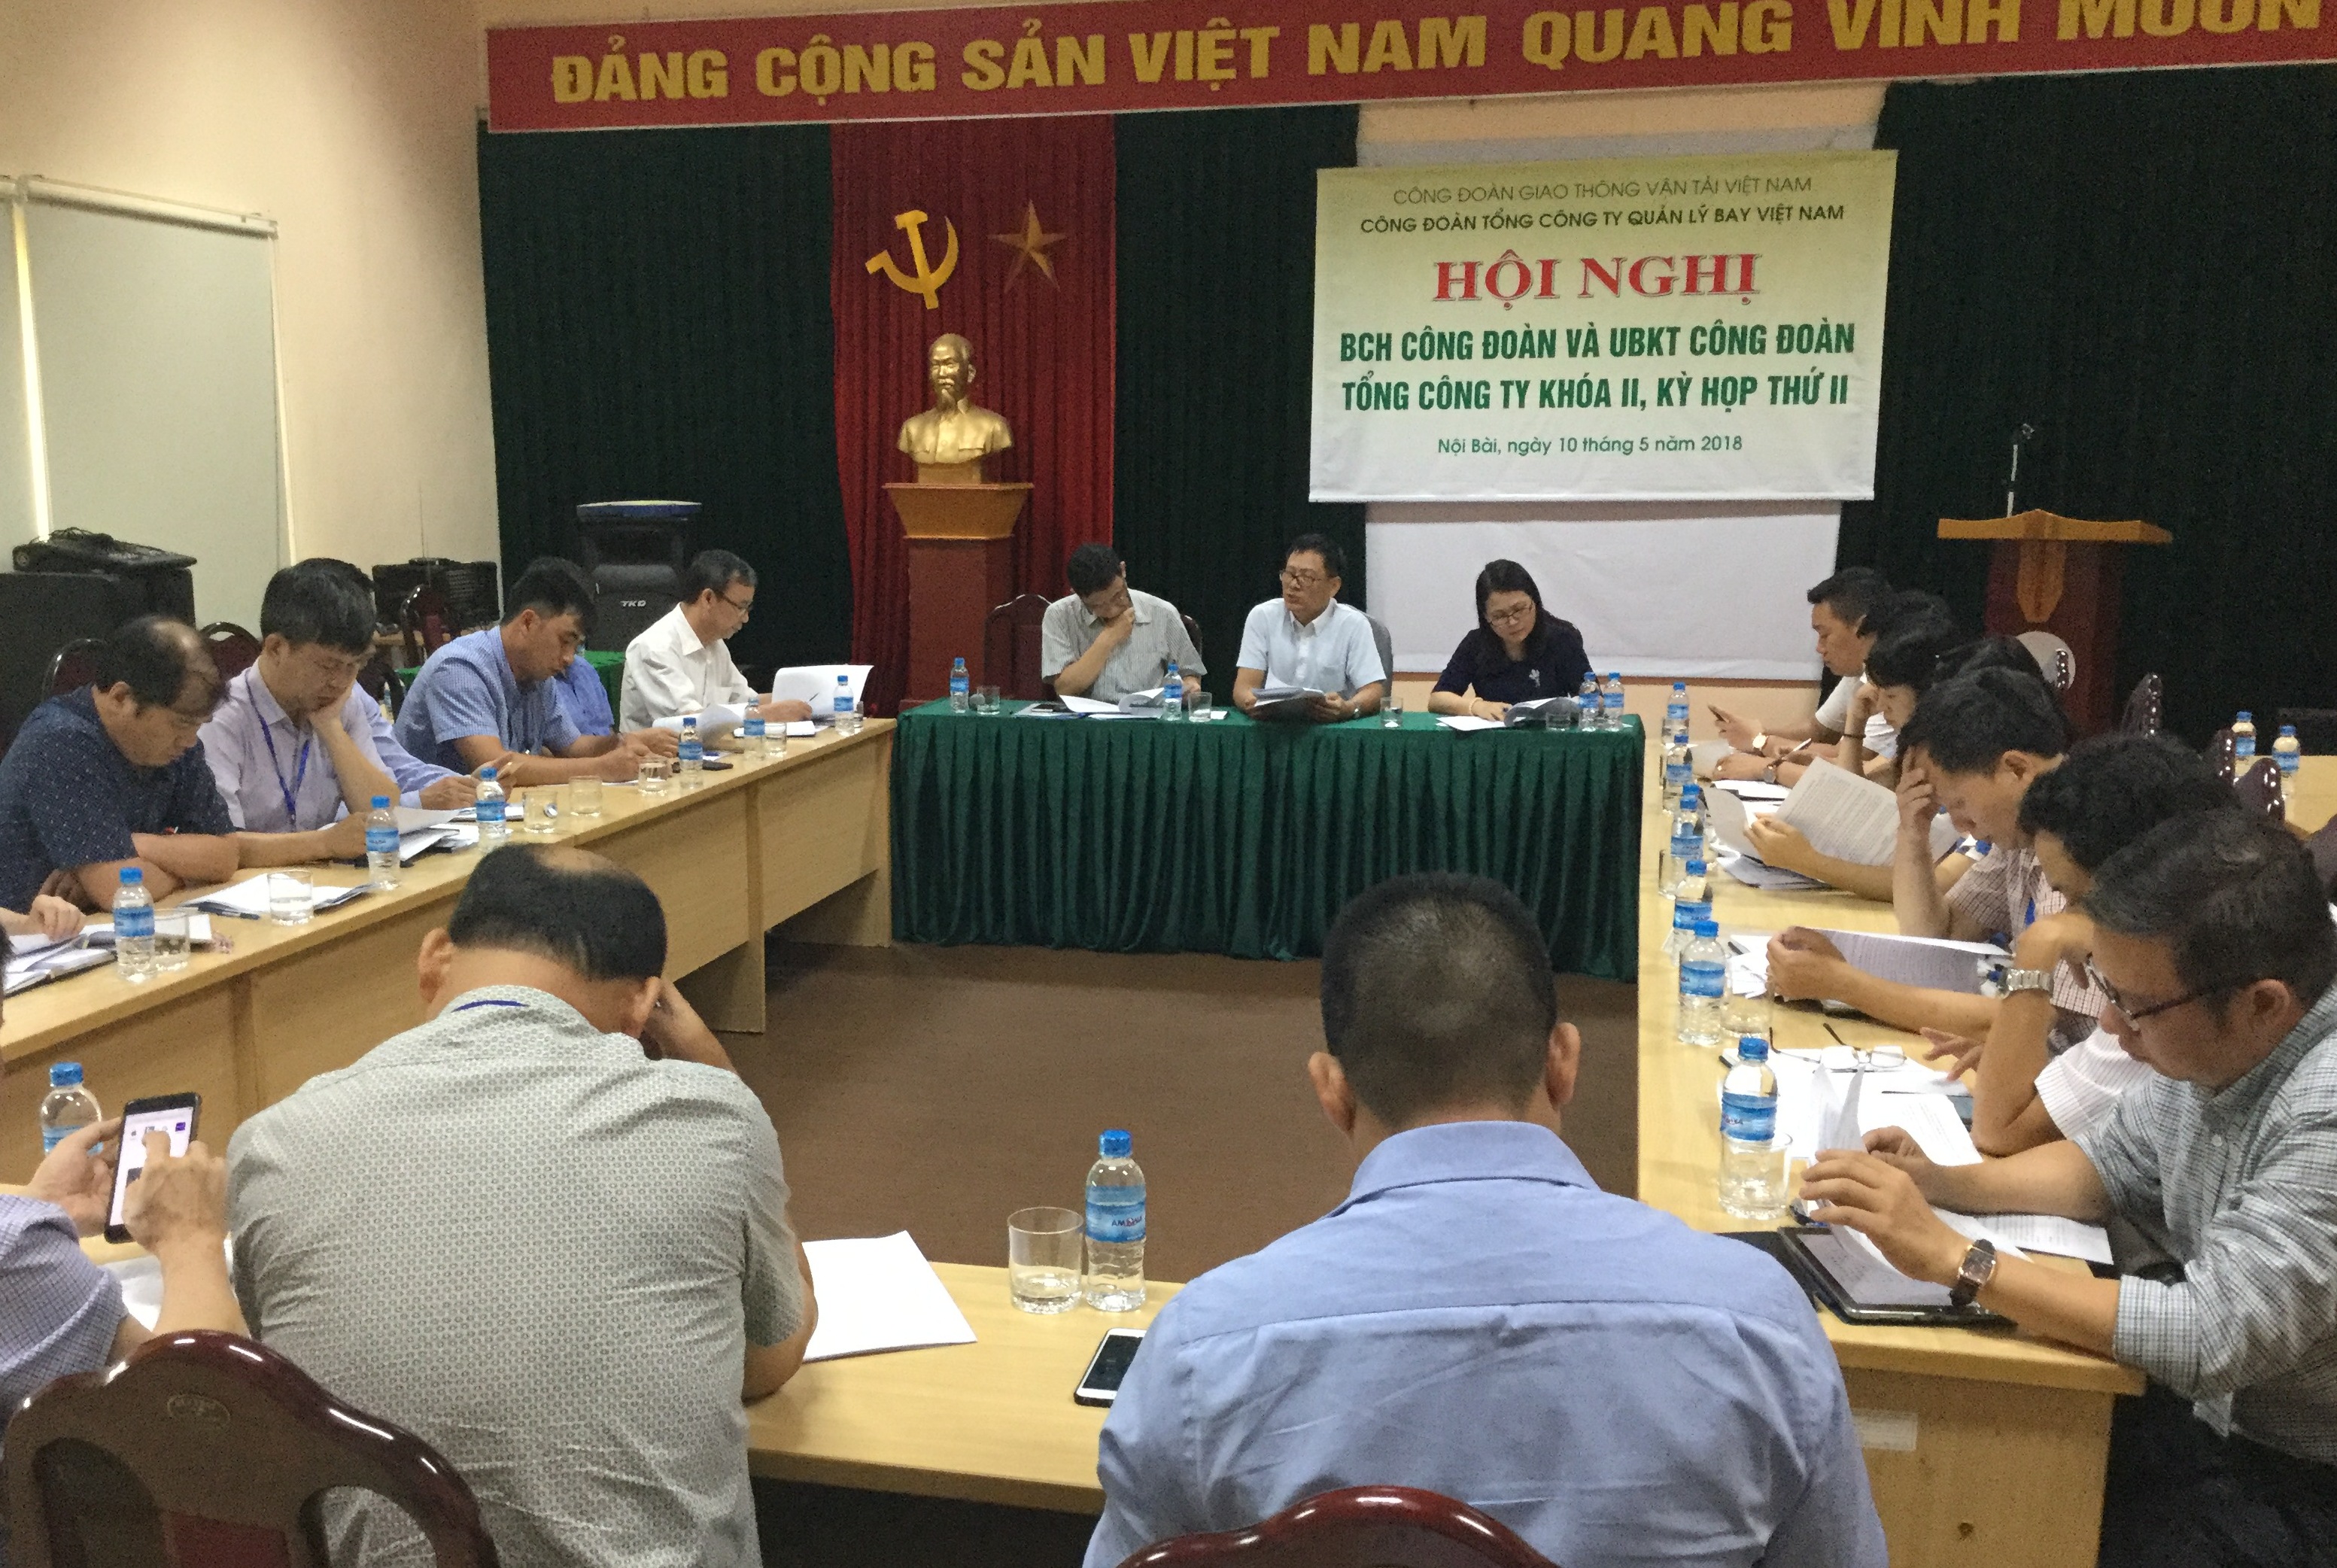 Hội nghị BCH Công đoàn Tổng công ty Quản lý bay Việt Nam khóa II, kỳ họp thứ II